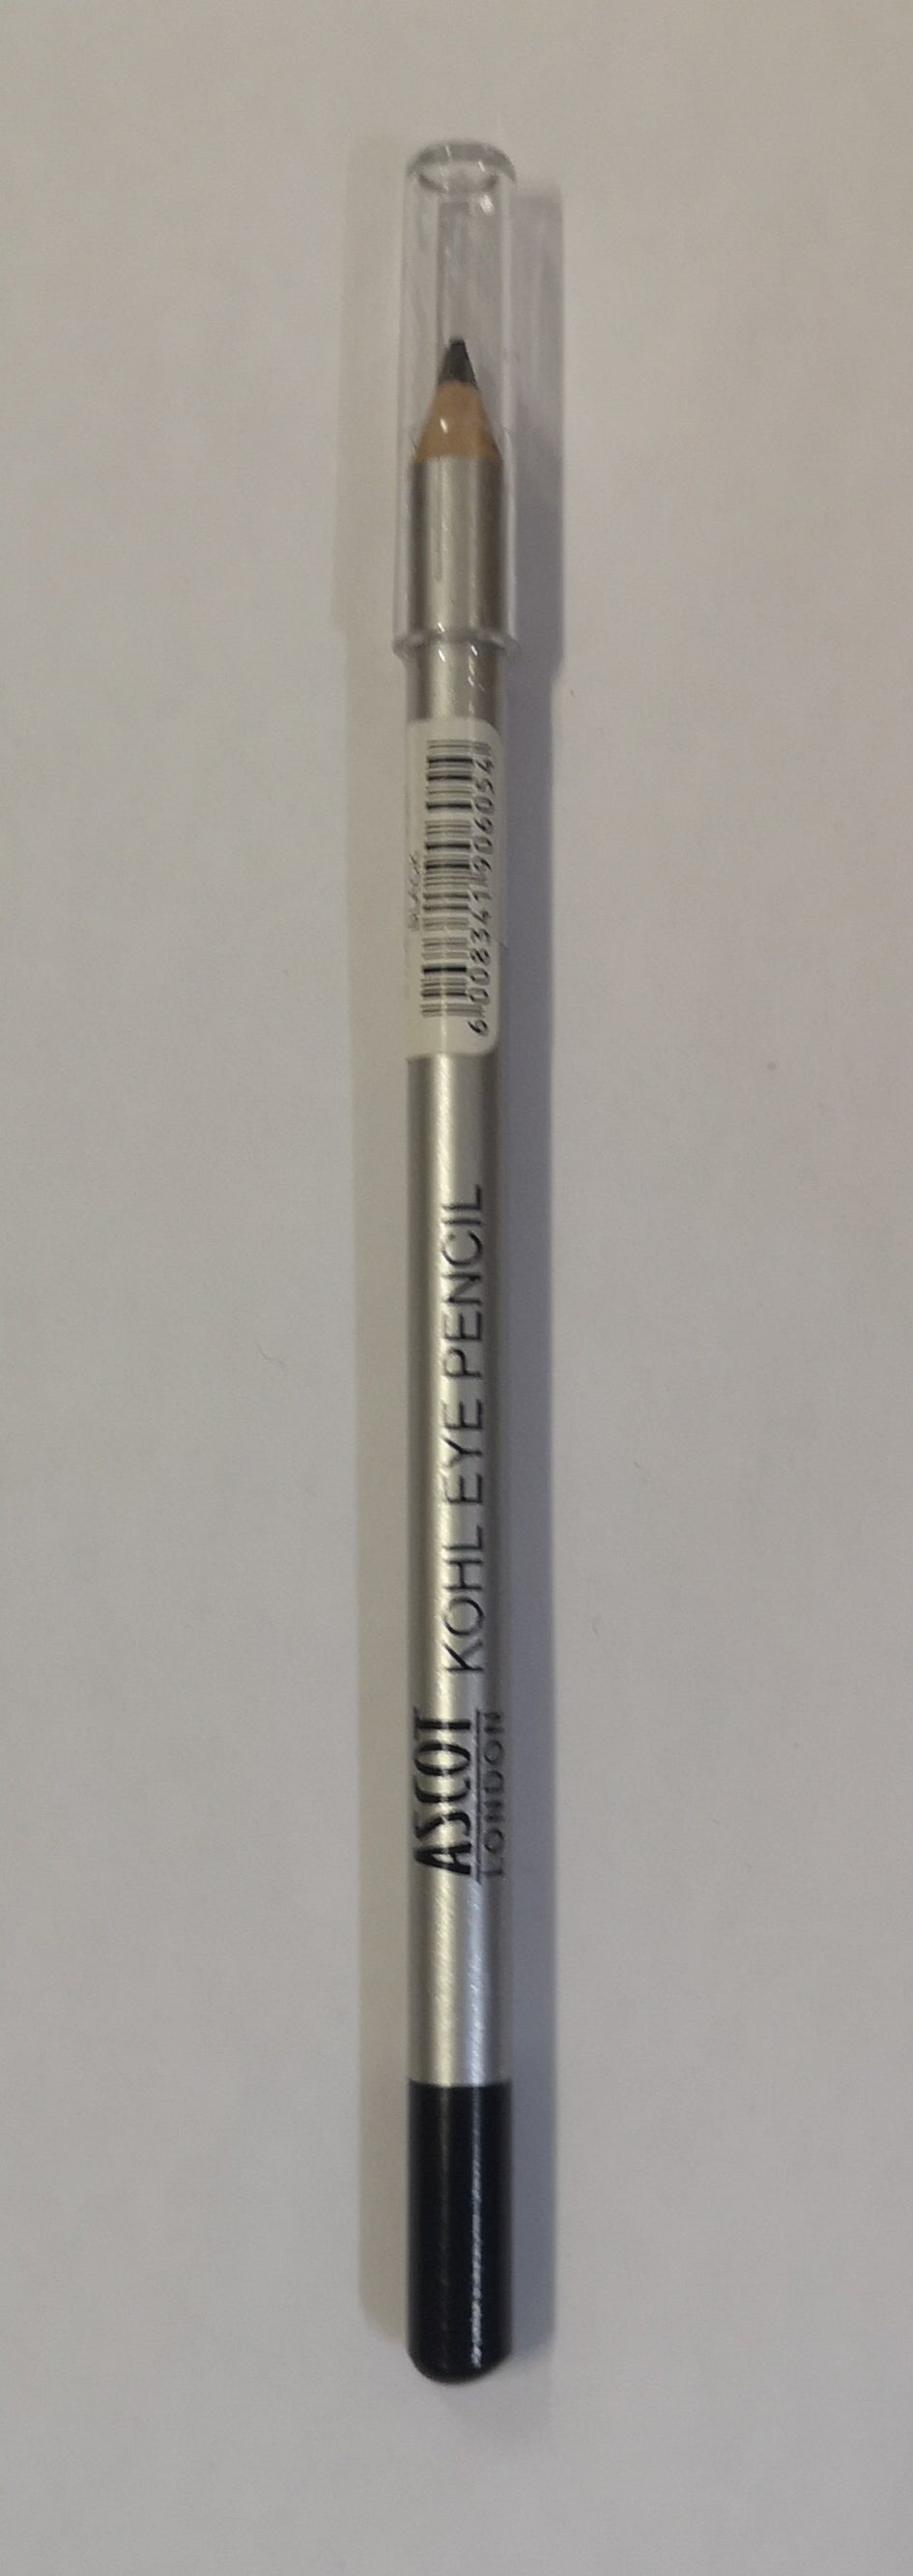 Ascot Kohl Pencil